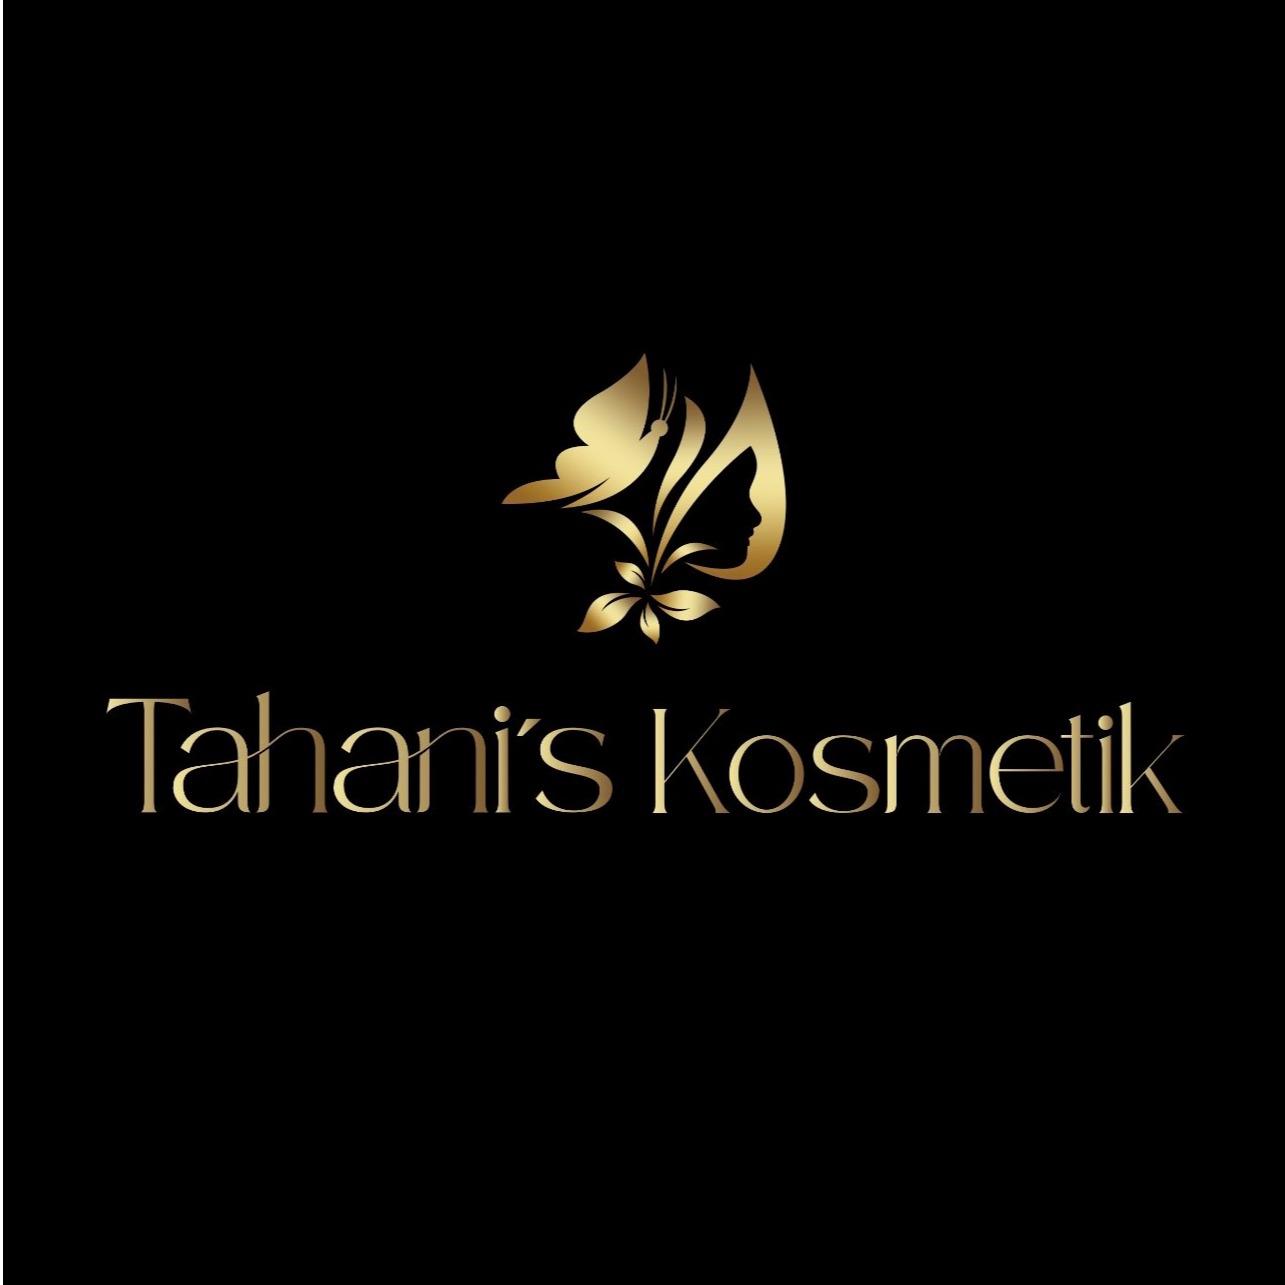 Tahani's Kosmetik in Dortmund - Logo